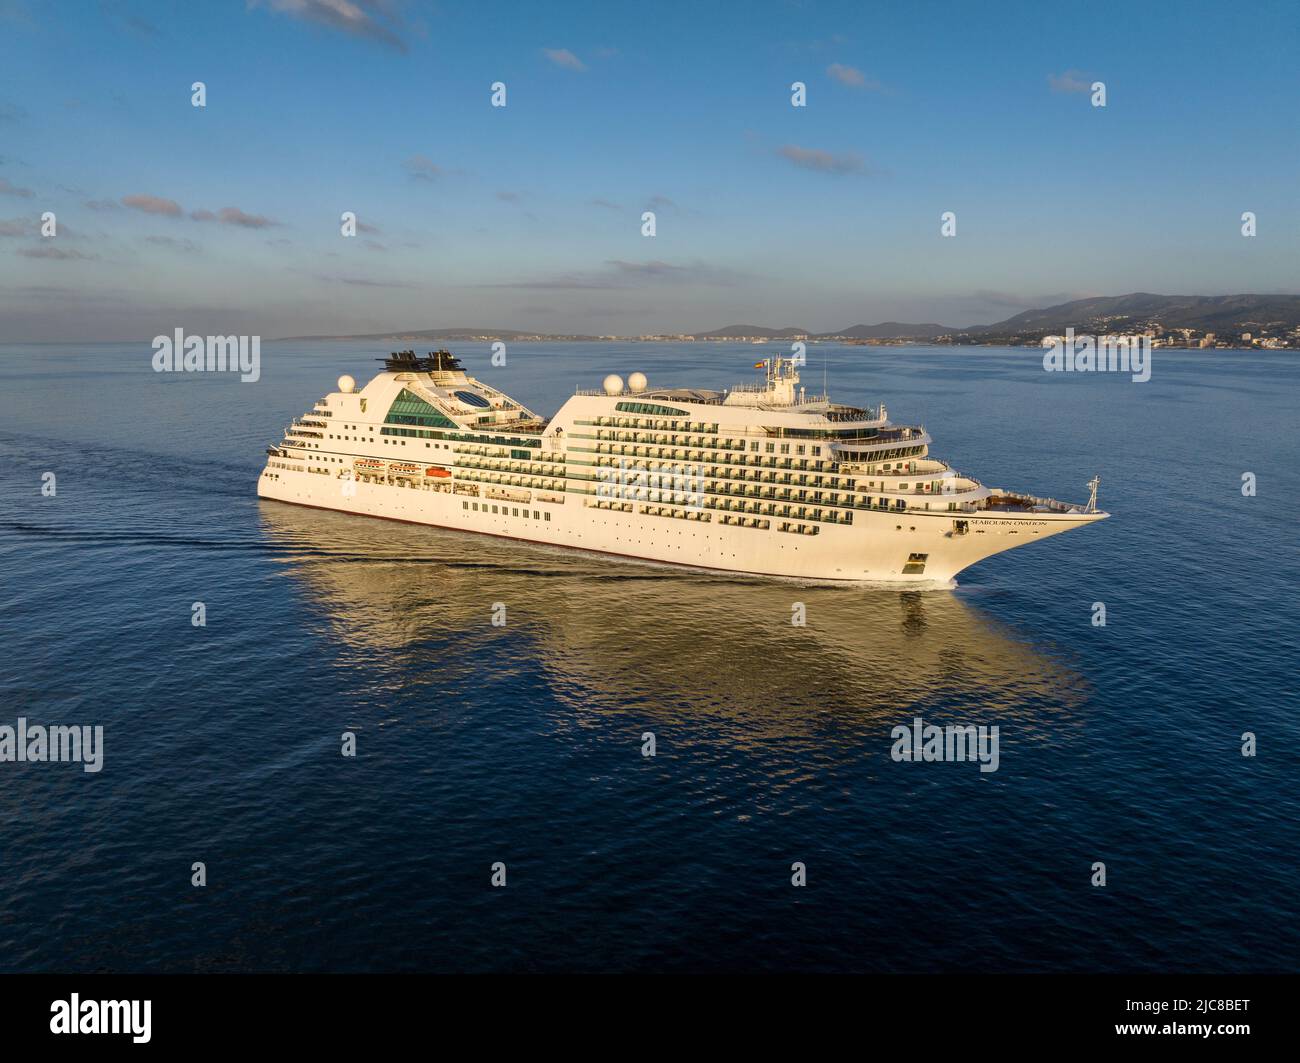 Die MV Seabourn Ovation ist ein Kreuzfahrtschiff der Seabourn Cruise Line. Luftaufnahme von Seabourn Ovation auf dem Weg nach Mallorca Spanien. Stockfoto